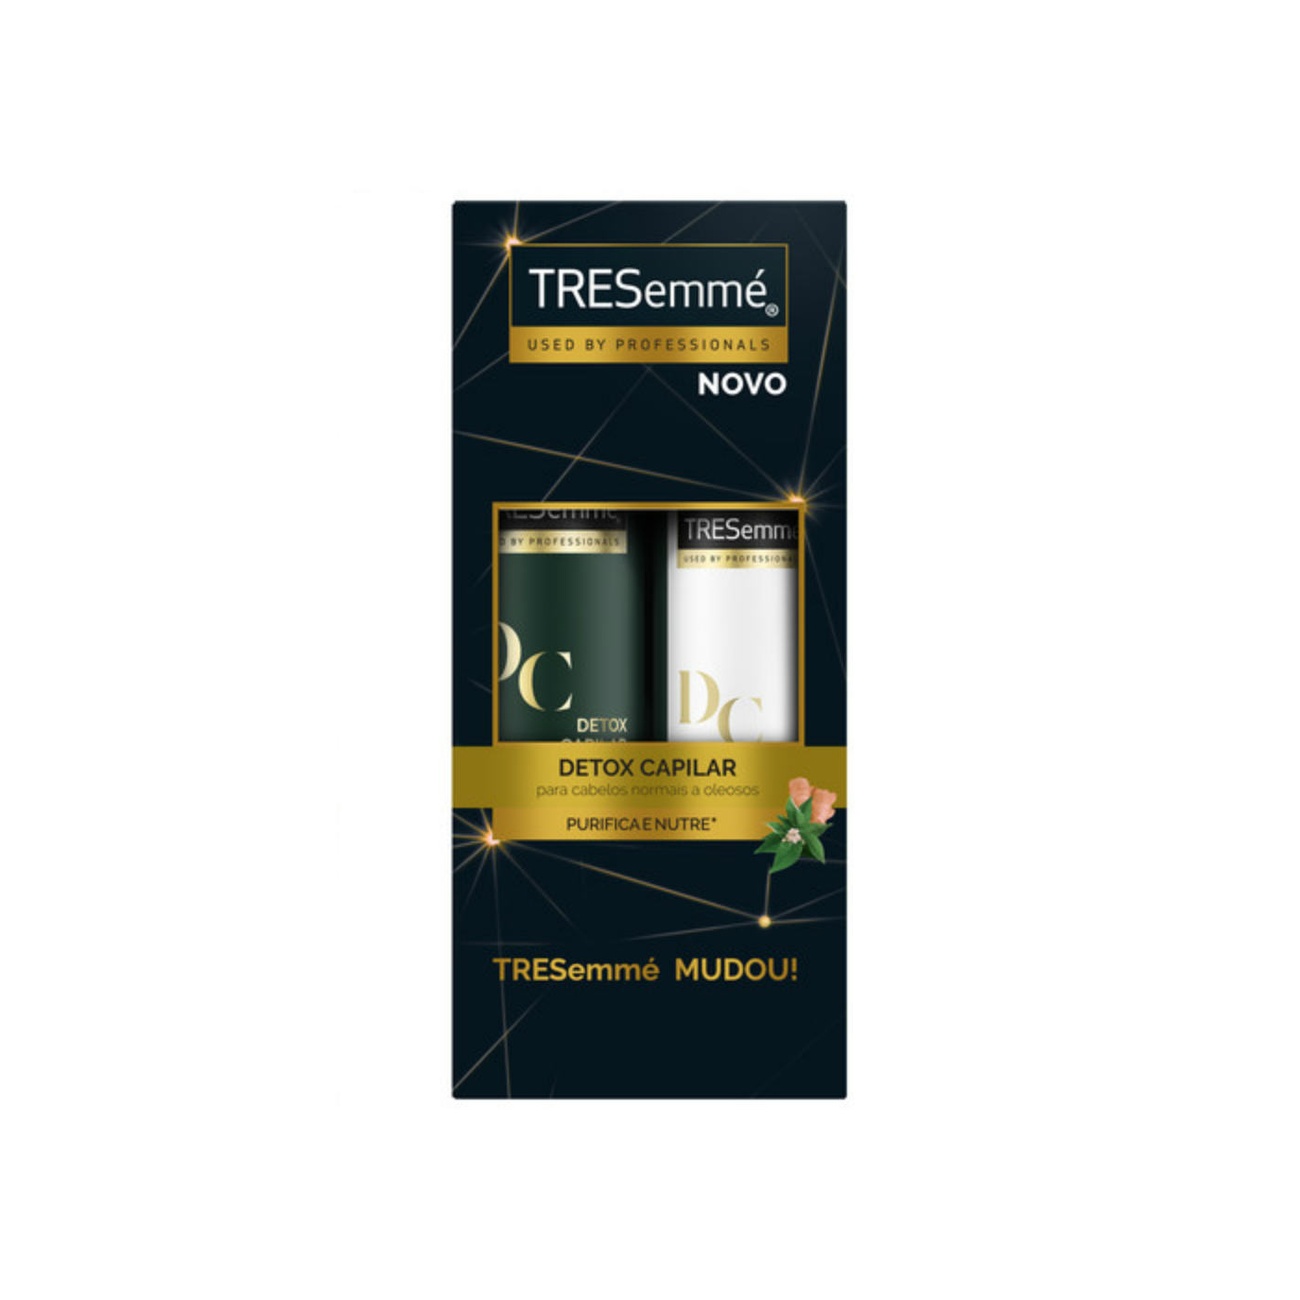 Oferta Tresemmé Shampoo Detox Capilar 400ml + Condicionador 200ml